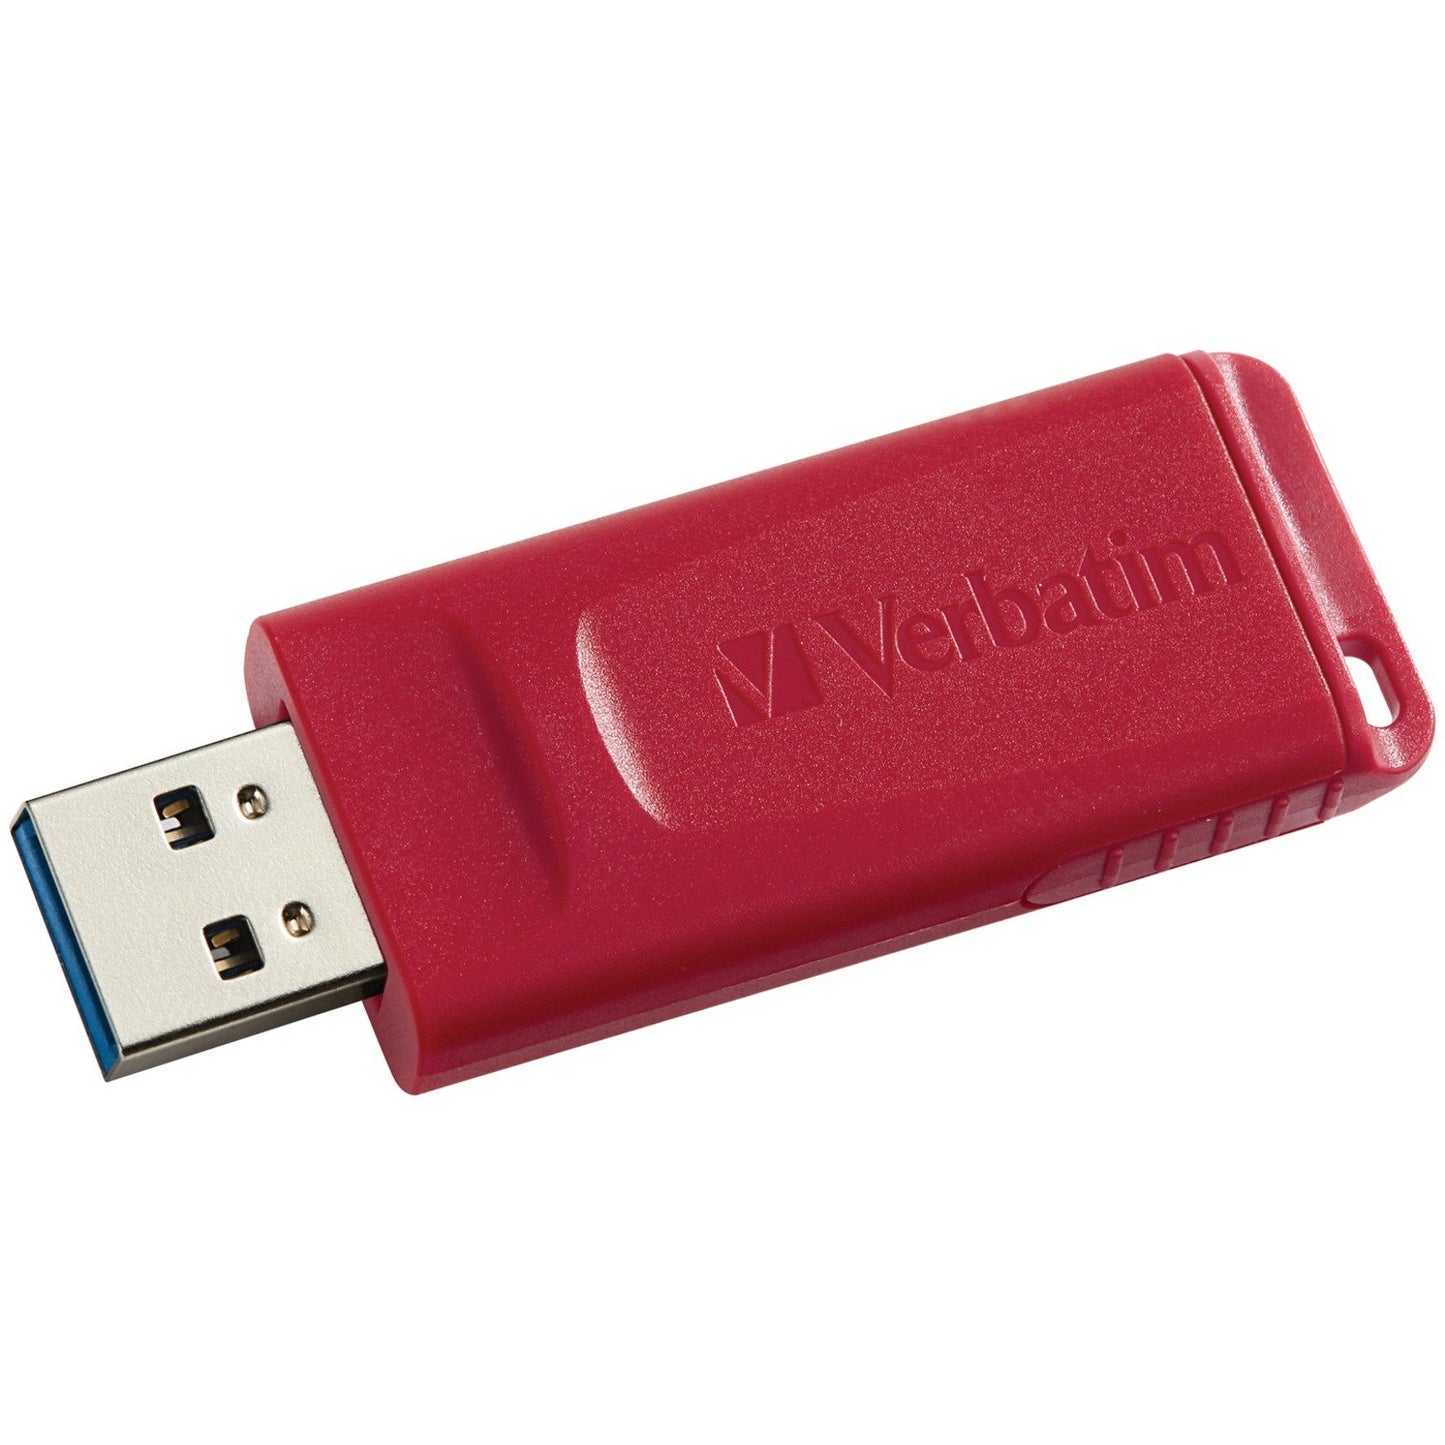 Verbatim 97005 Store 'n' Go USB Flash Drive (64GB)